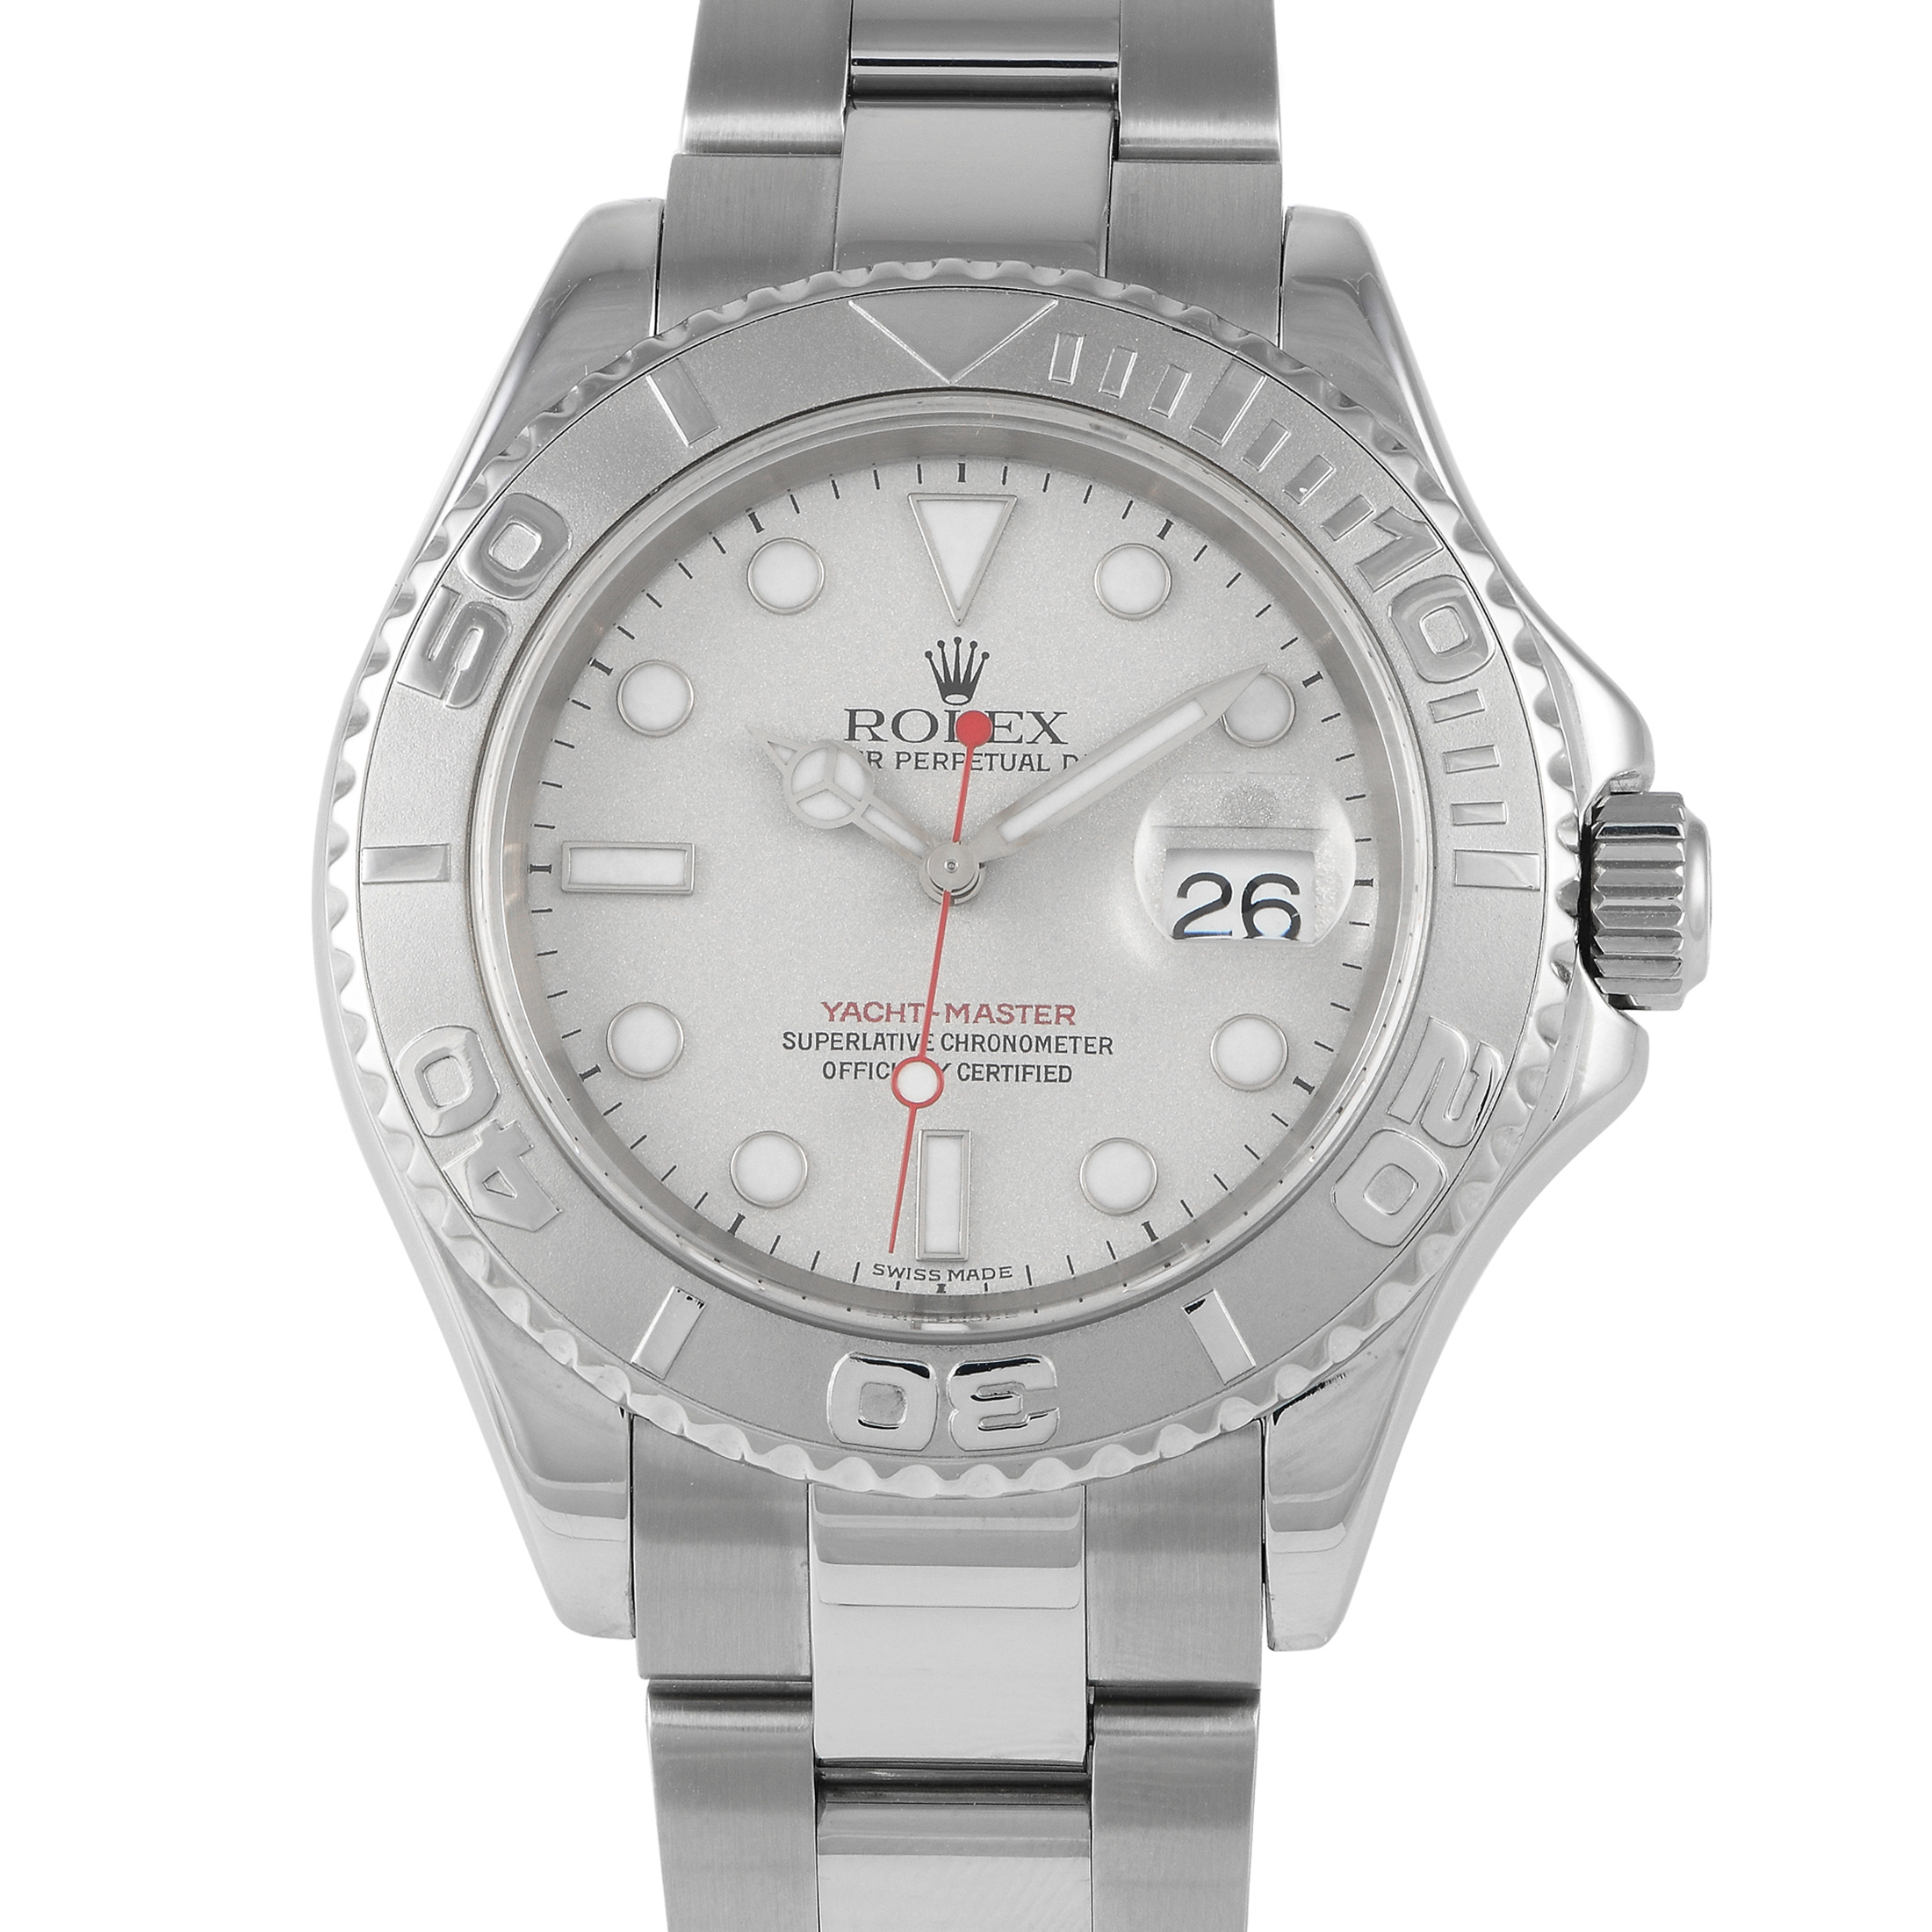 Luxury Watches Online, Swiss Watches